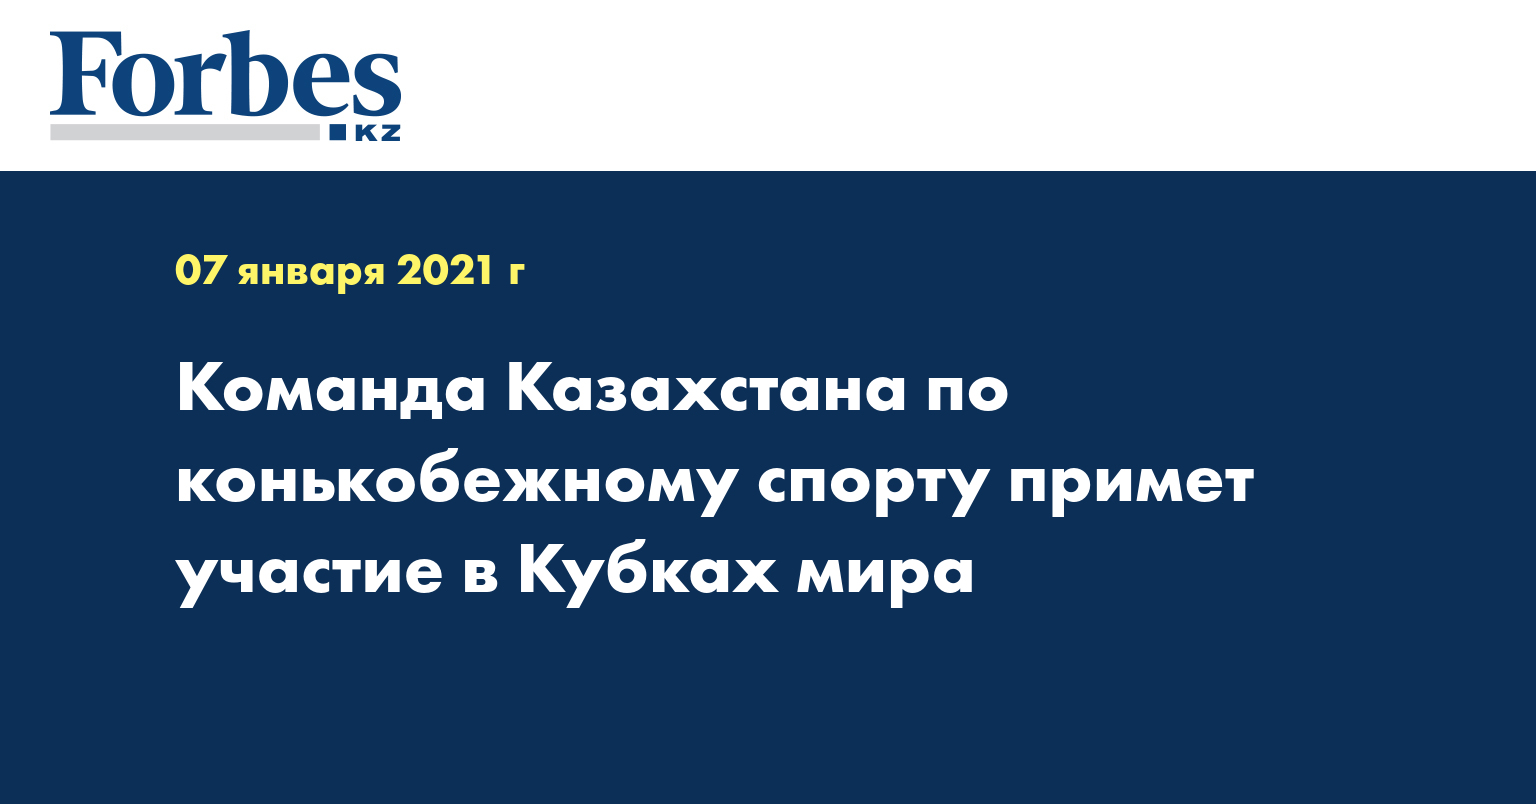 Команда Казахстана по конькобежному спорту примет участие в Кубках мира